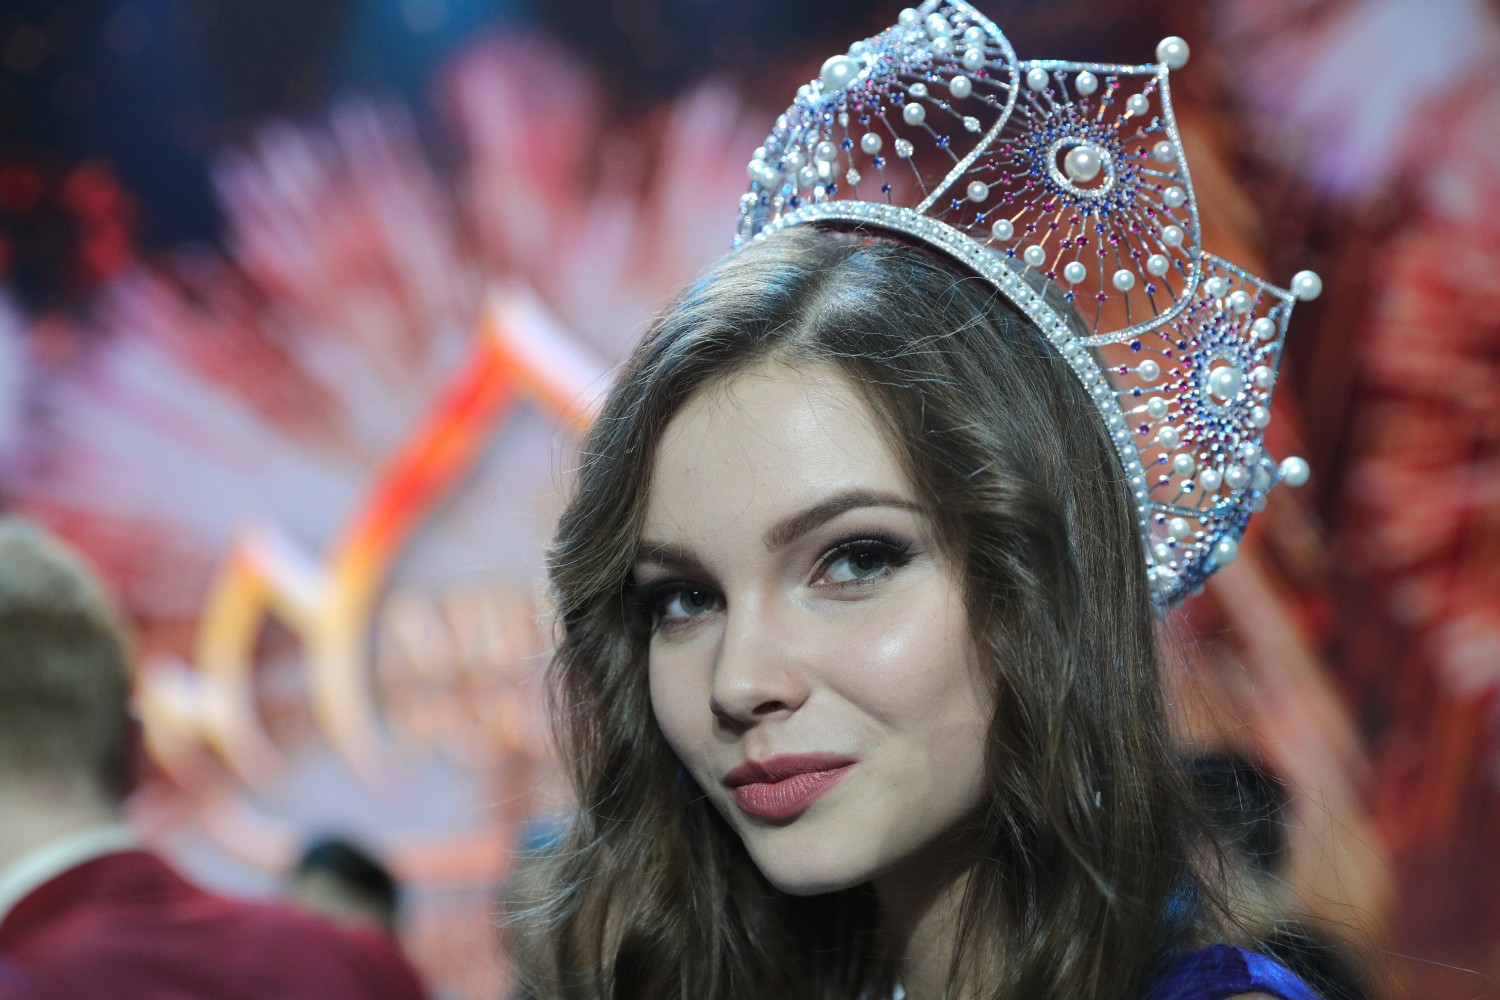 Самые красивые девушки россии топ 100